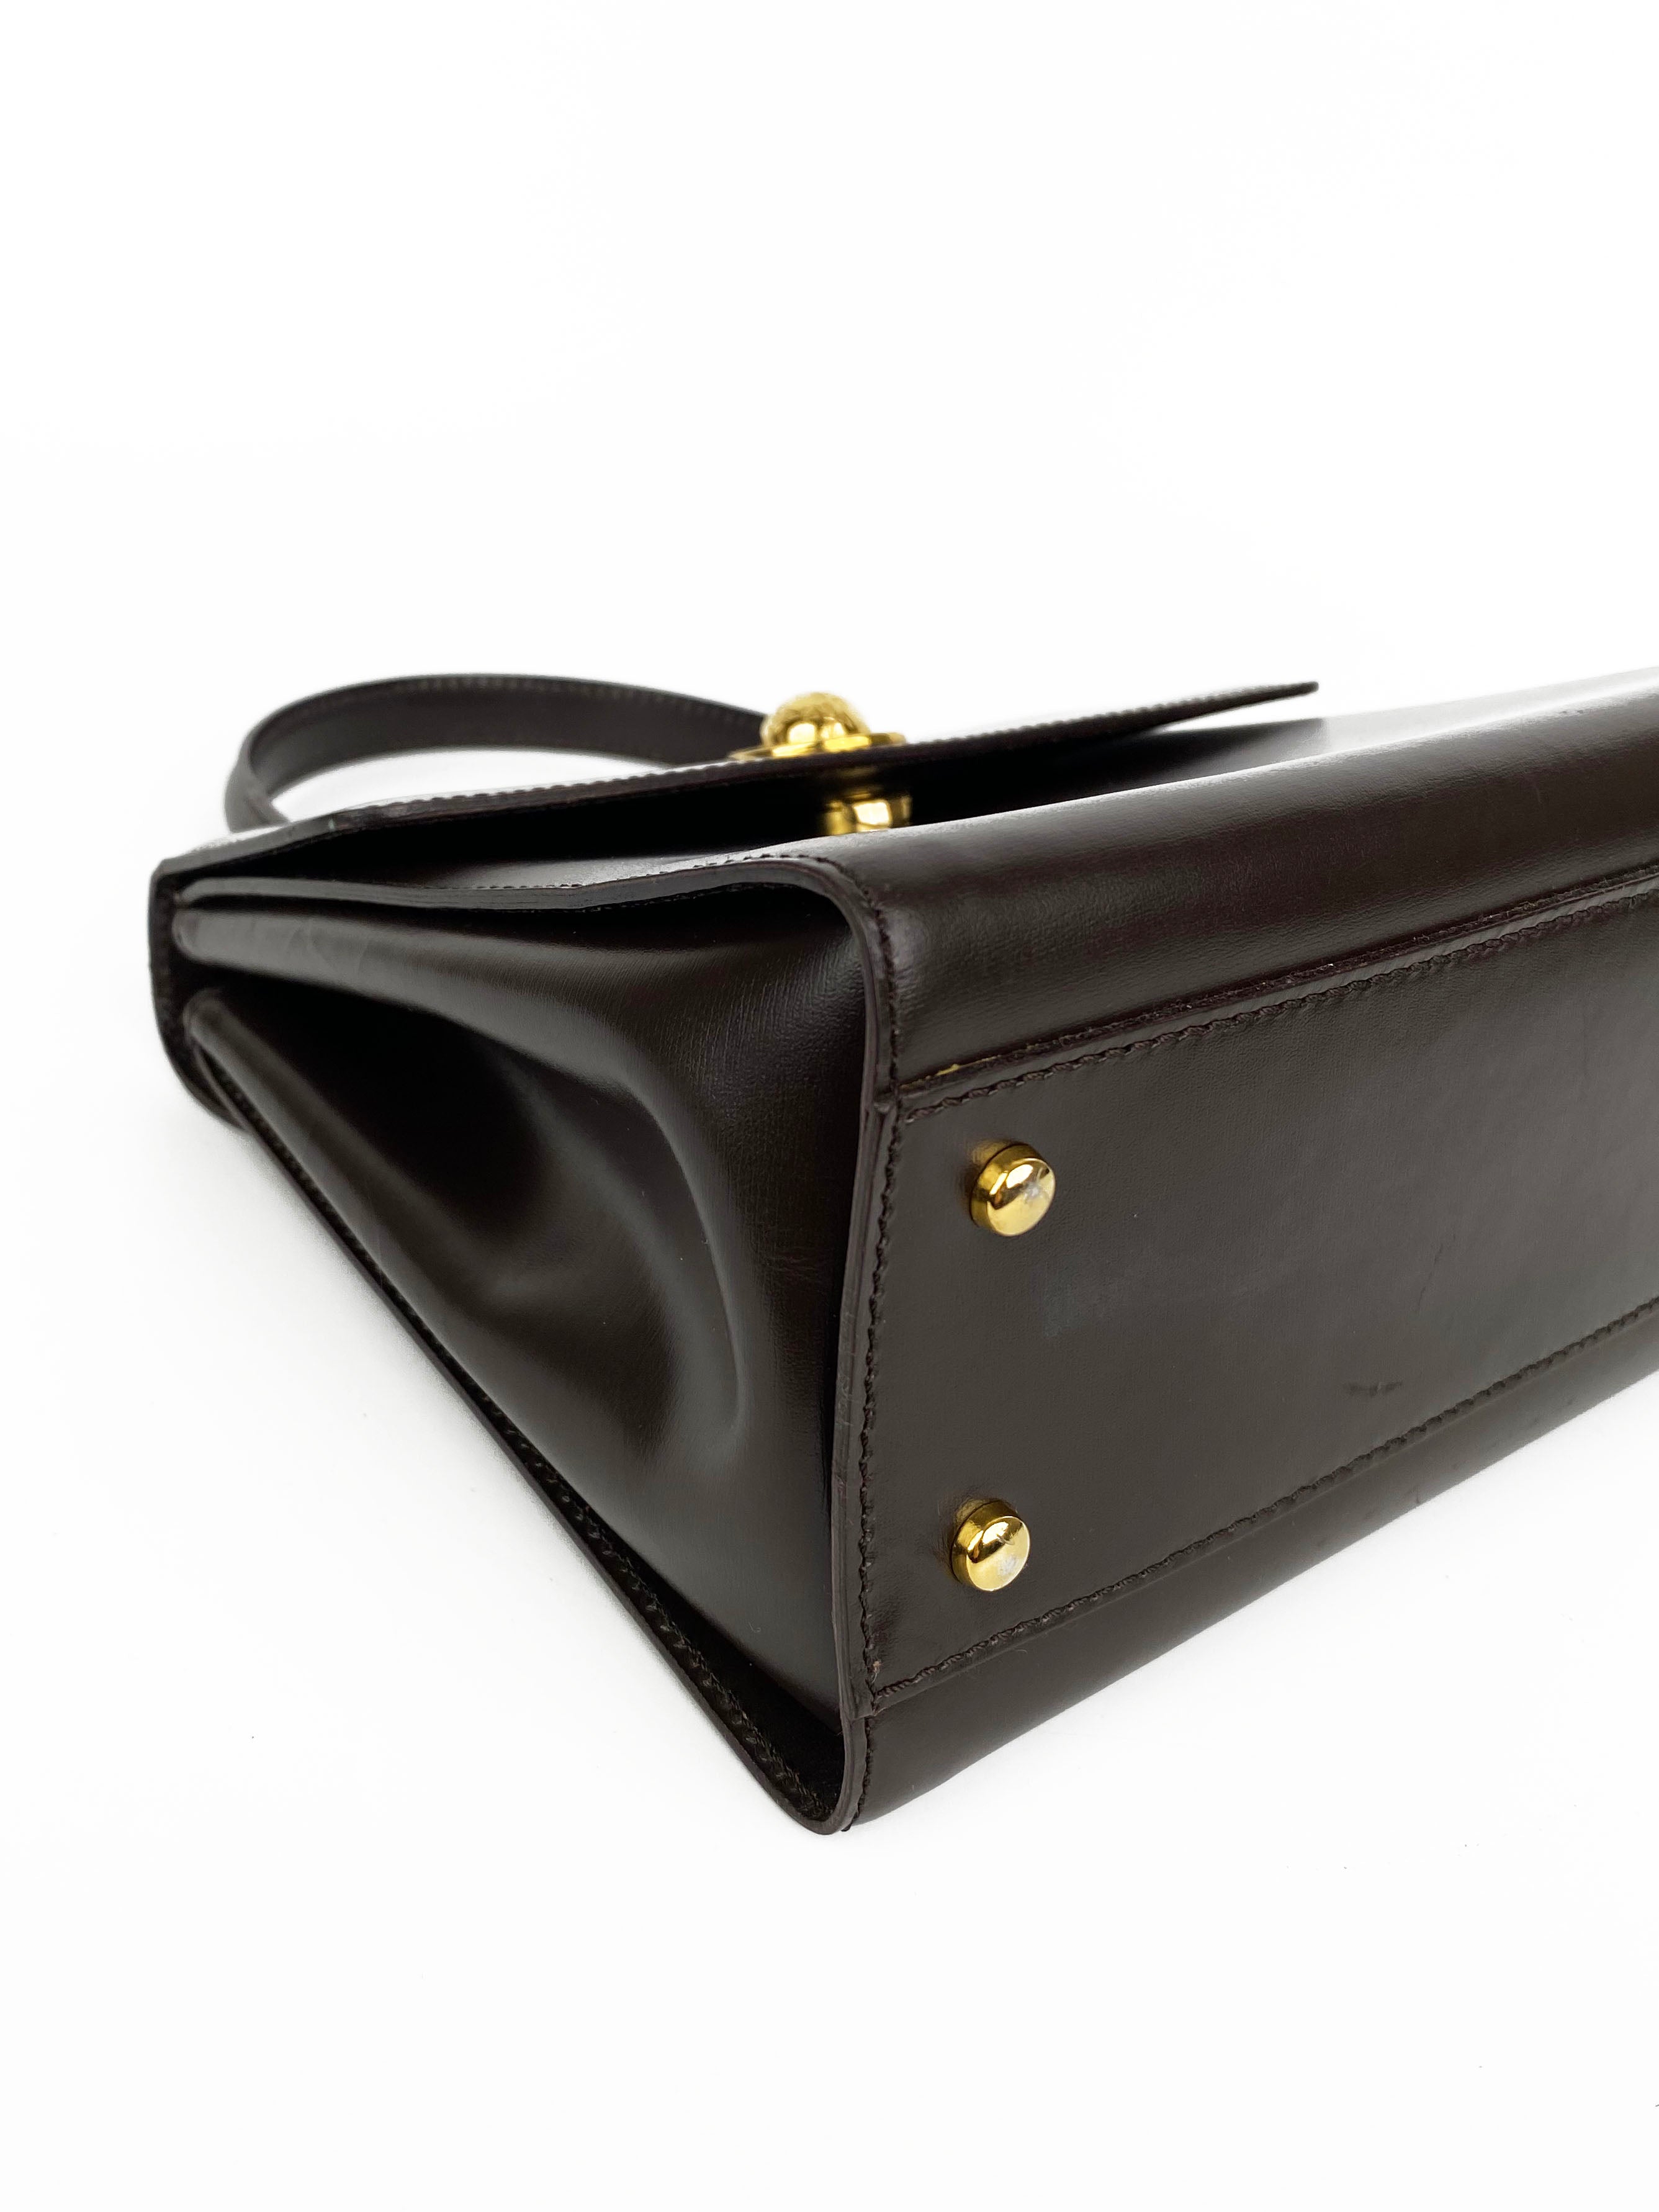 Celine Vintage Brown Top Handle Bag